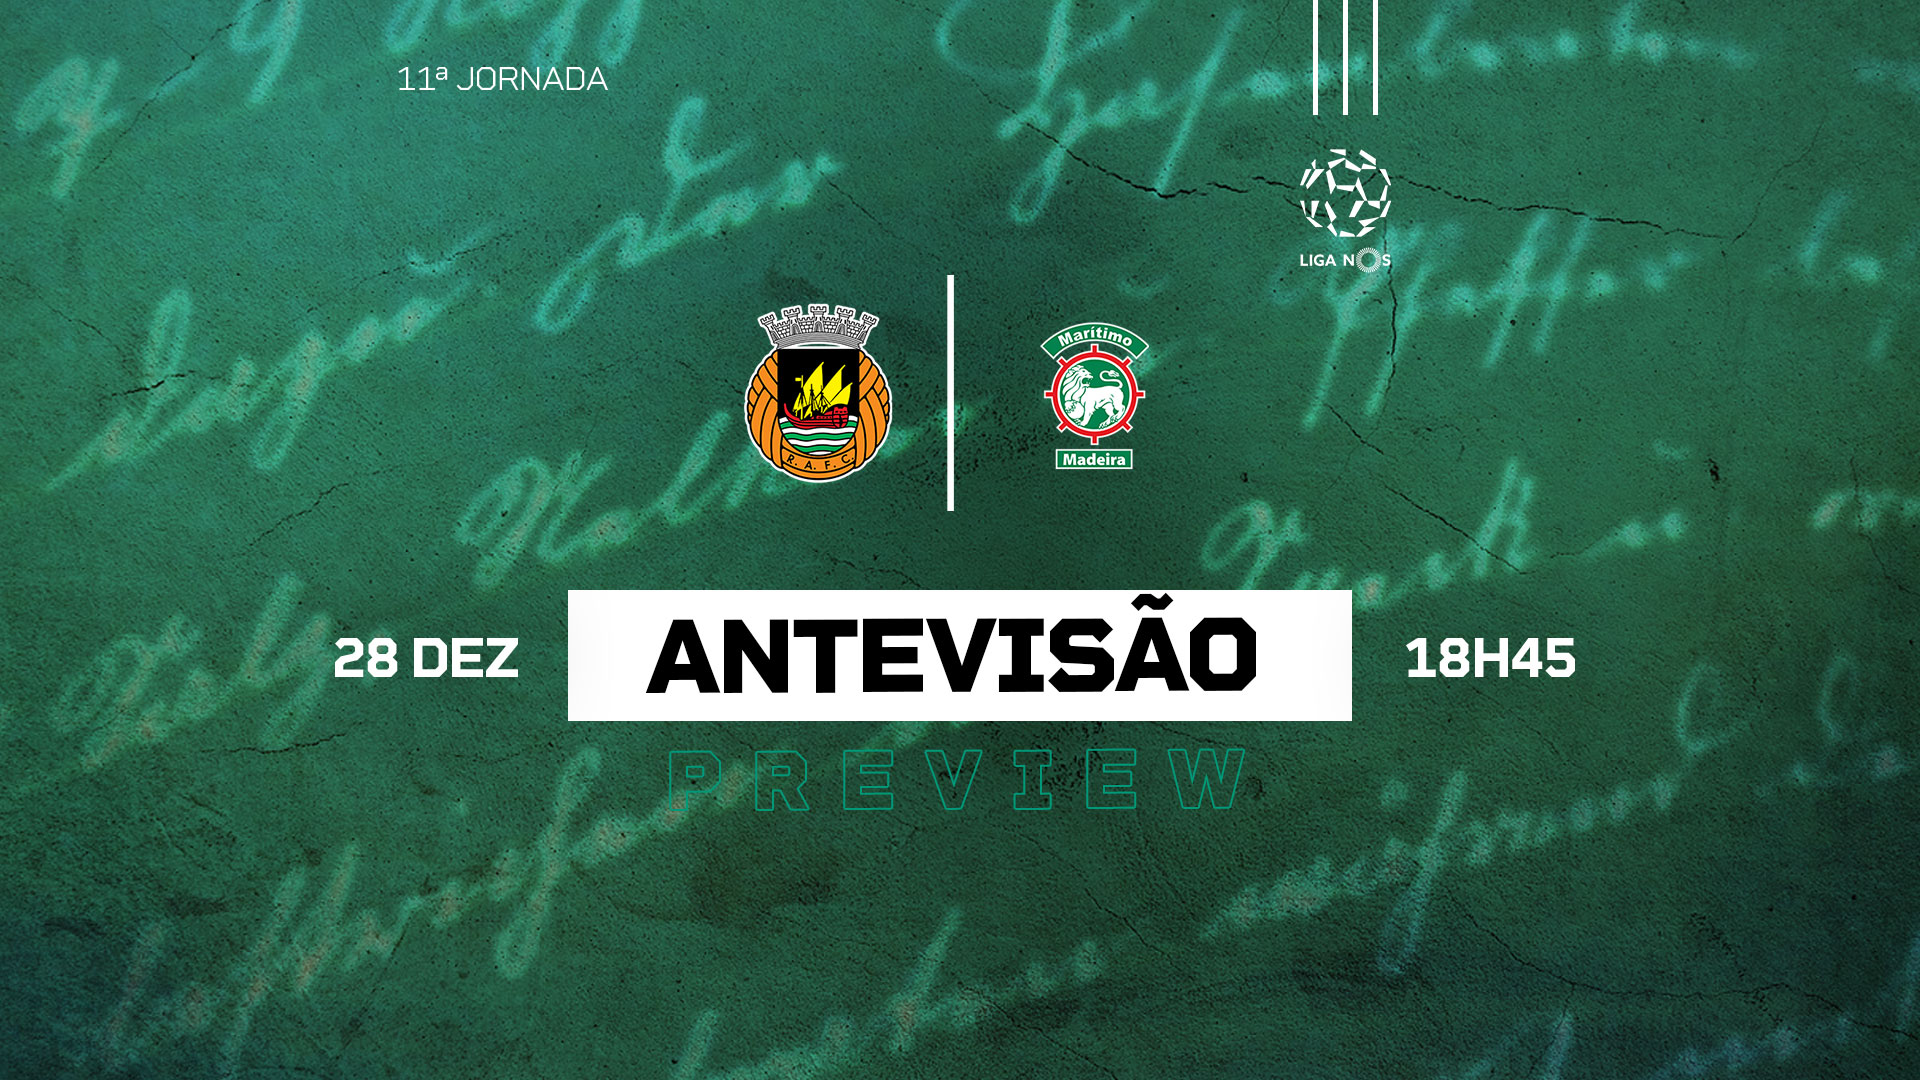 Calendário conhecido da Liga Revelação de Sub-23 - Rio Ave Futebol Clube